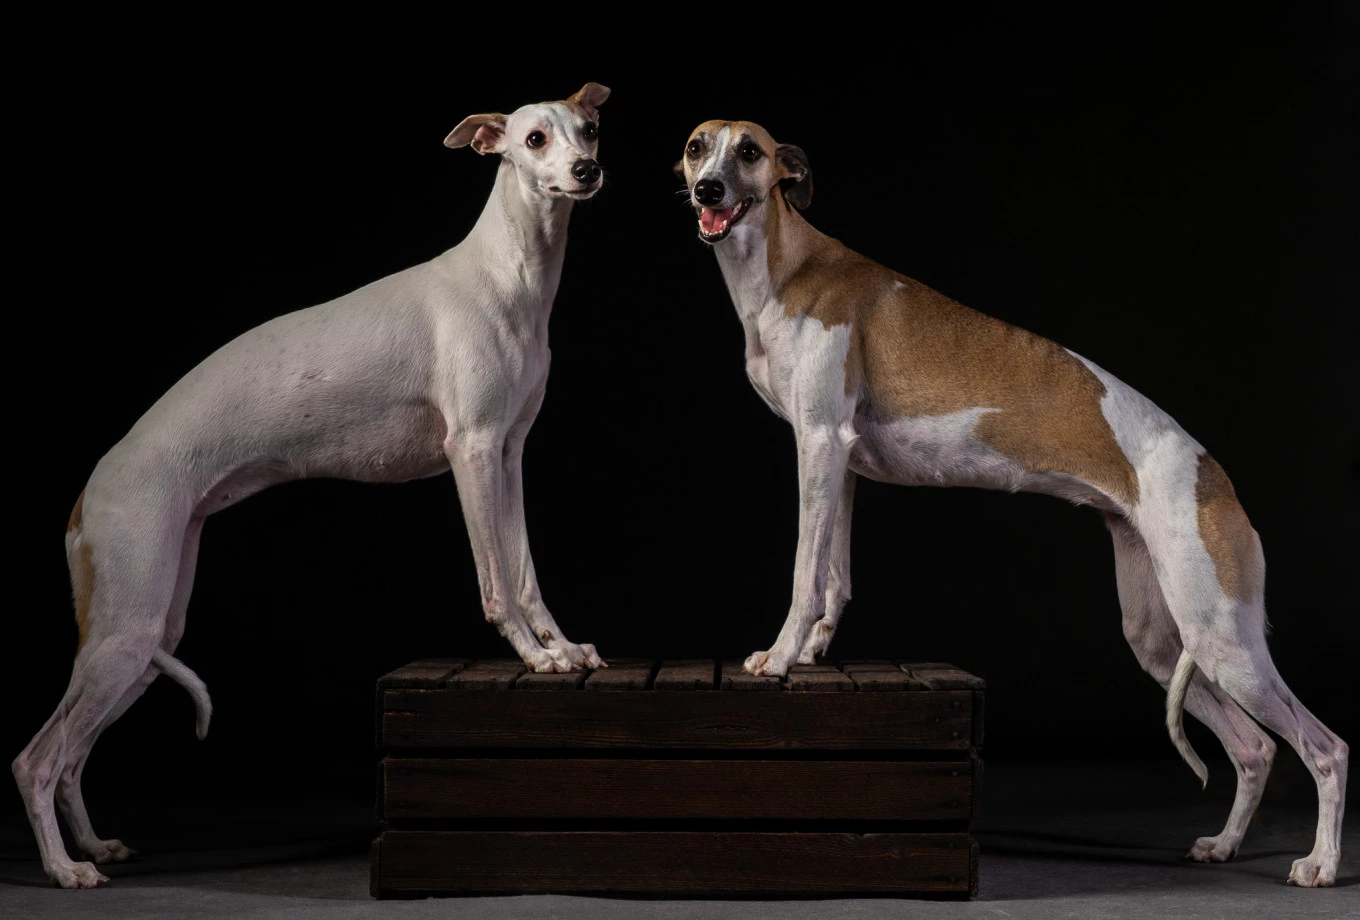 fotograf wroclaw inoinu portfolio zdjecia zdjecia zwierzat sesja zdjeciowa konie psy koty